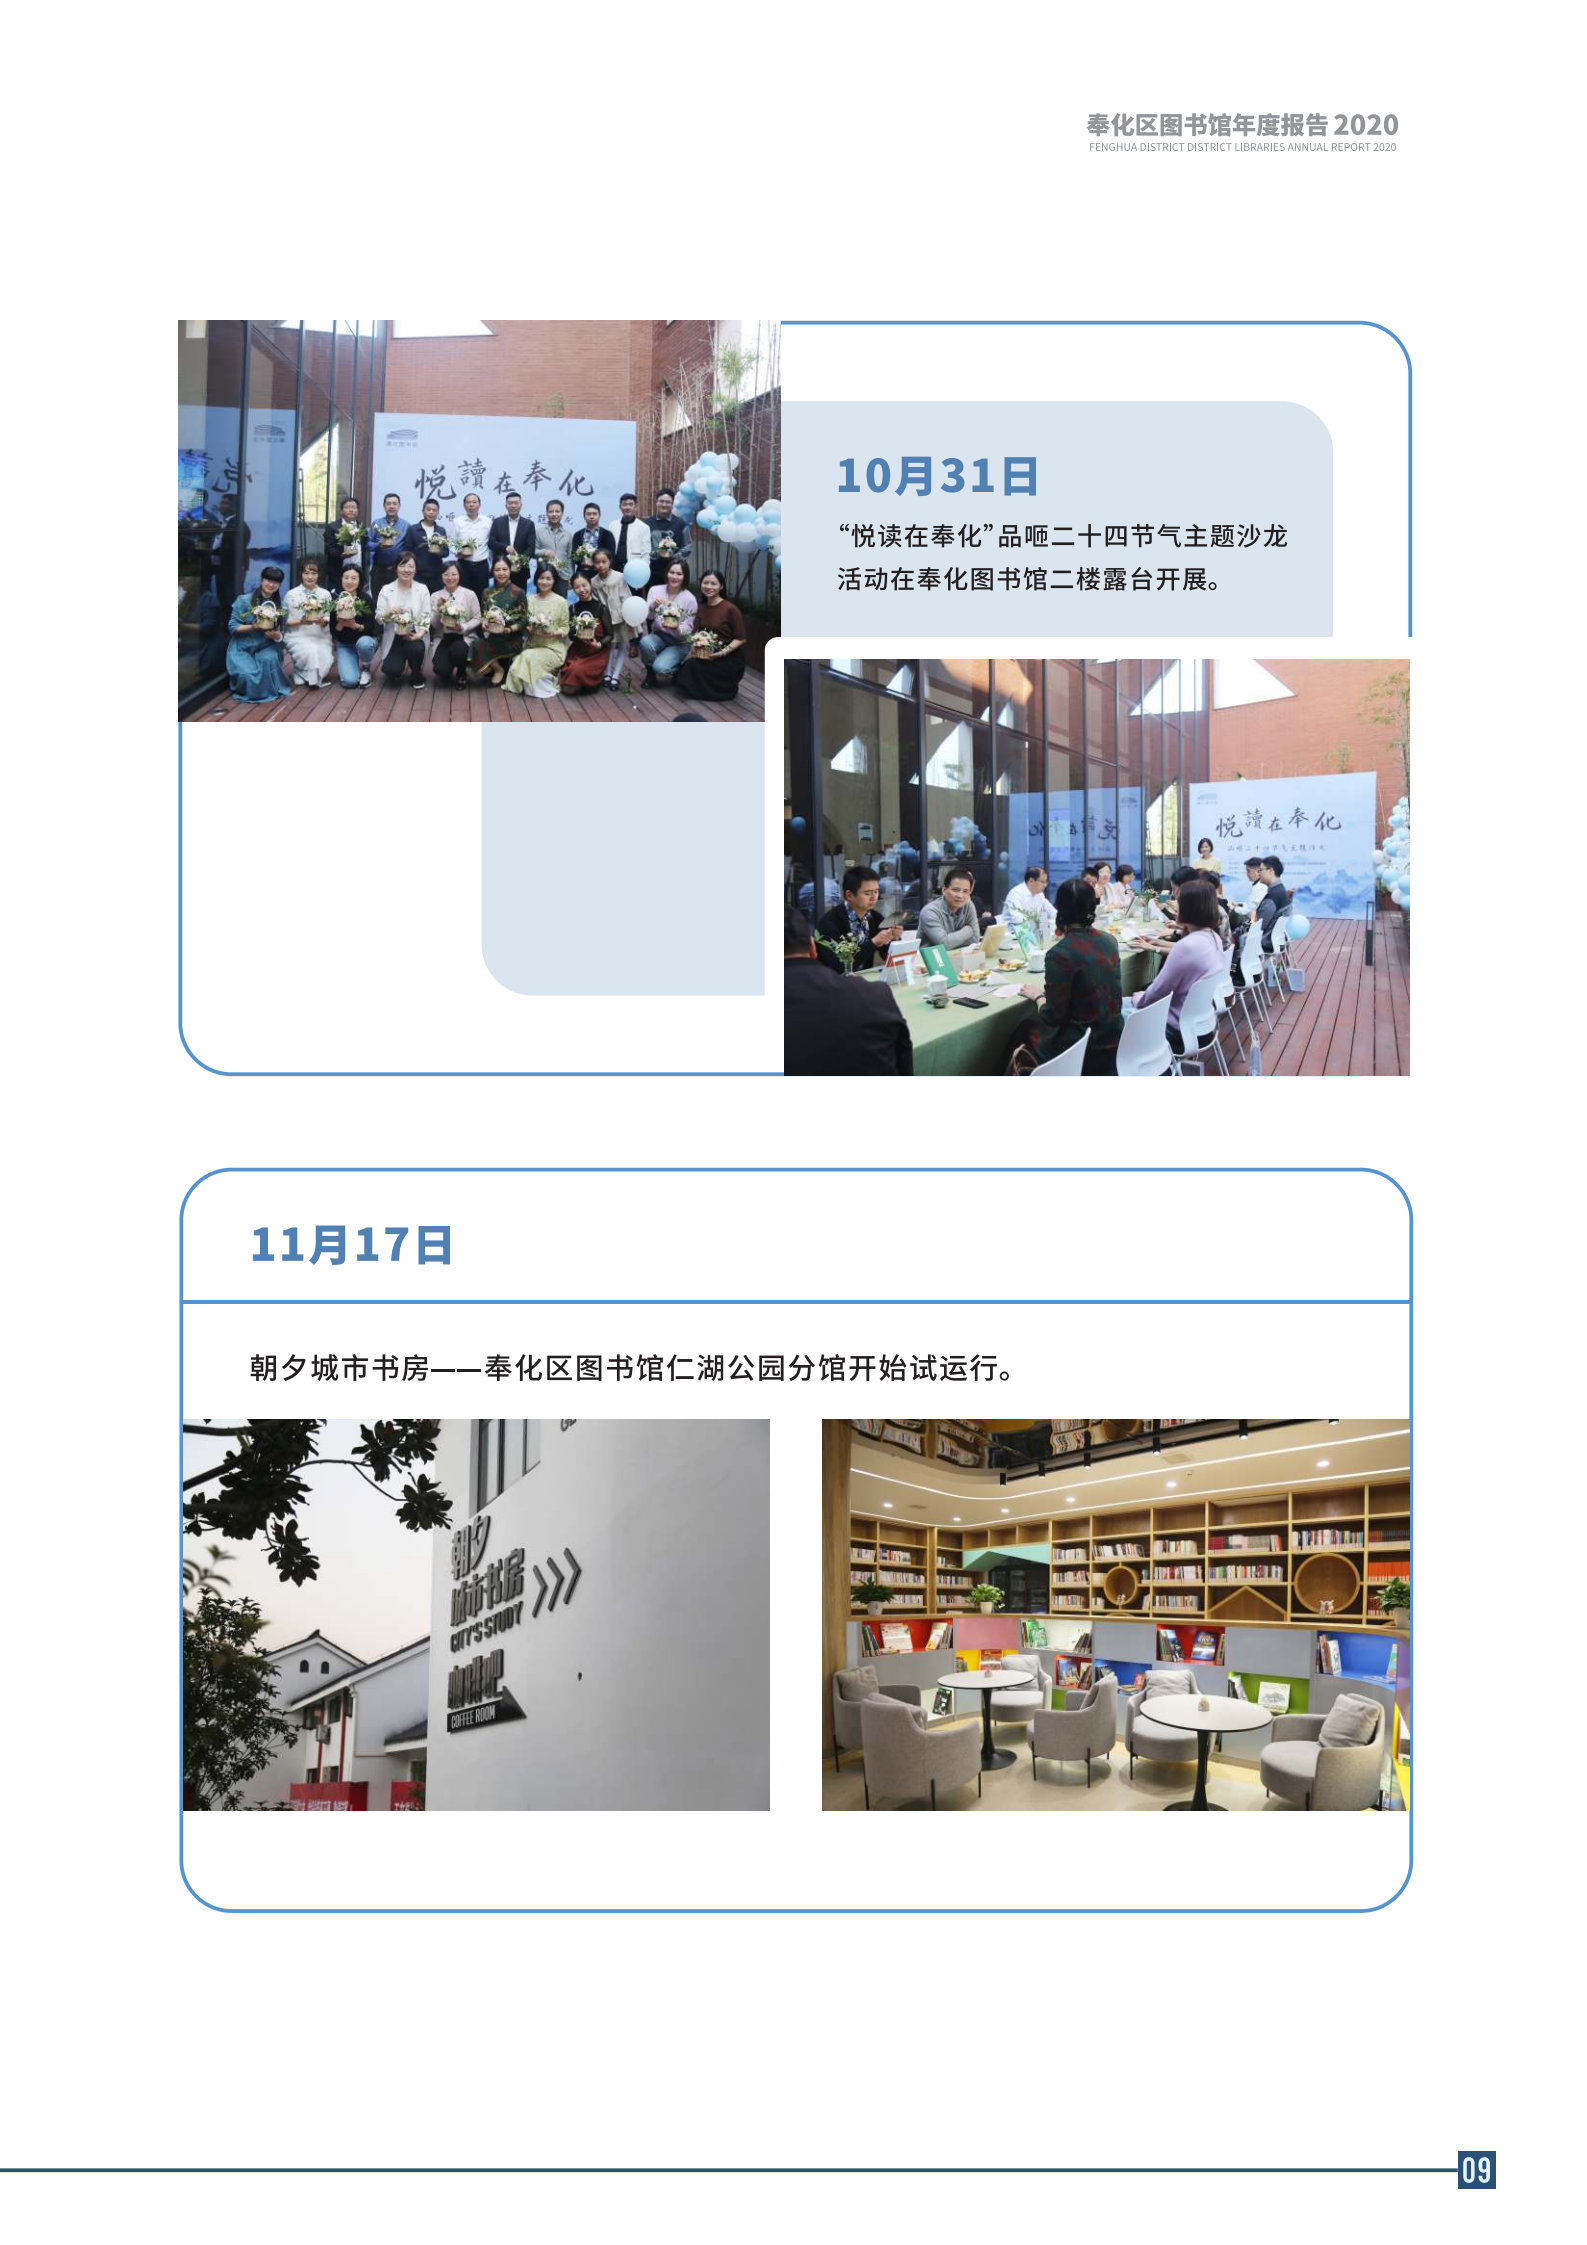 宁波市奉化区图书馆2020年年度报告 终稿_09.png